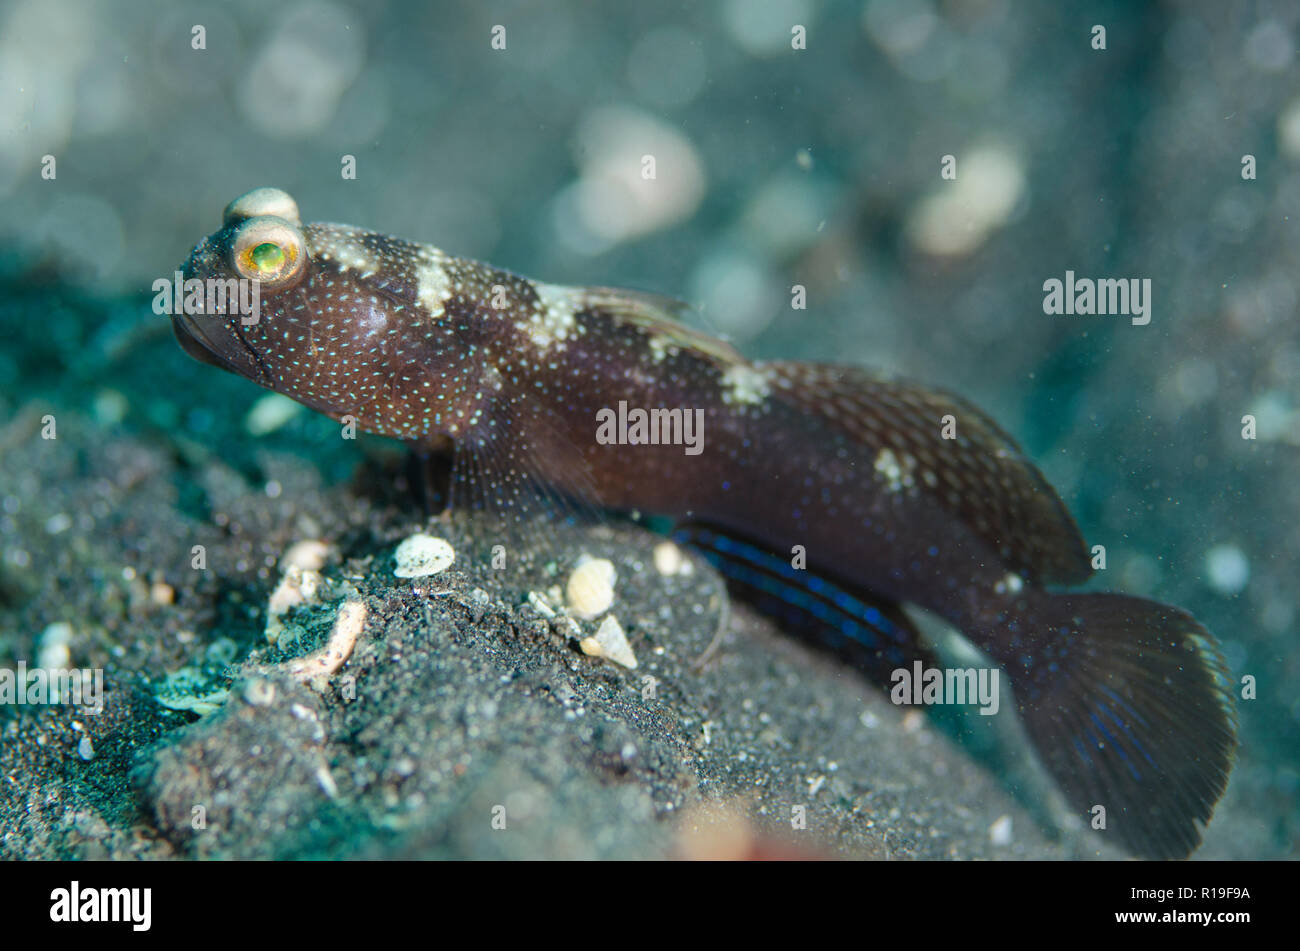 Banded Shrimpgoby, Cryptocentrus cinctus, on black sand, Cryptocentrus cinctus, TK2 dive site, Lembeh Straits, Sulawesi, Indonesia Stock Photo